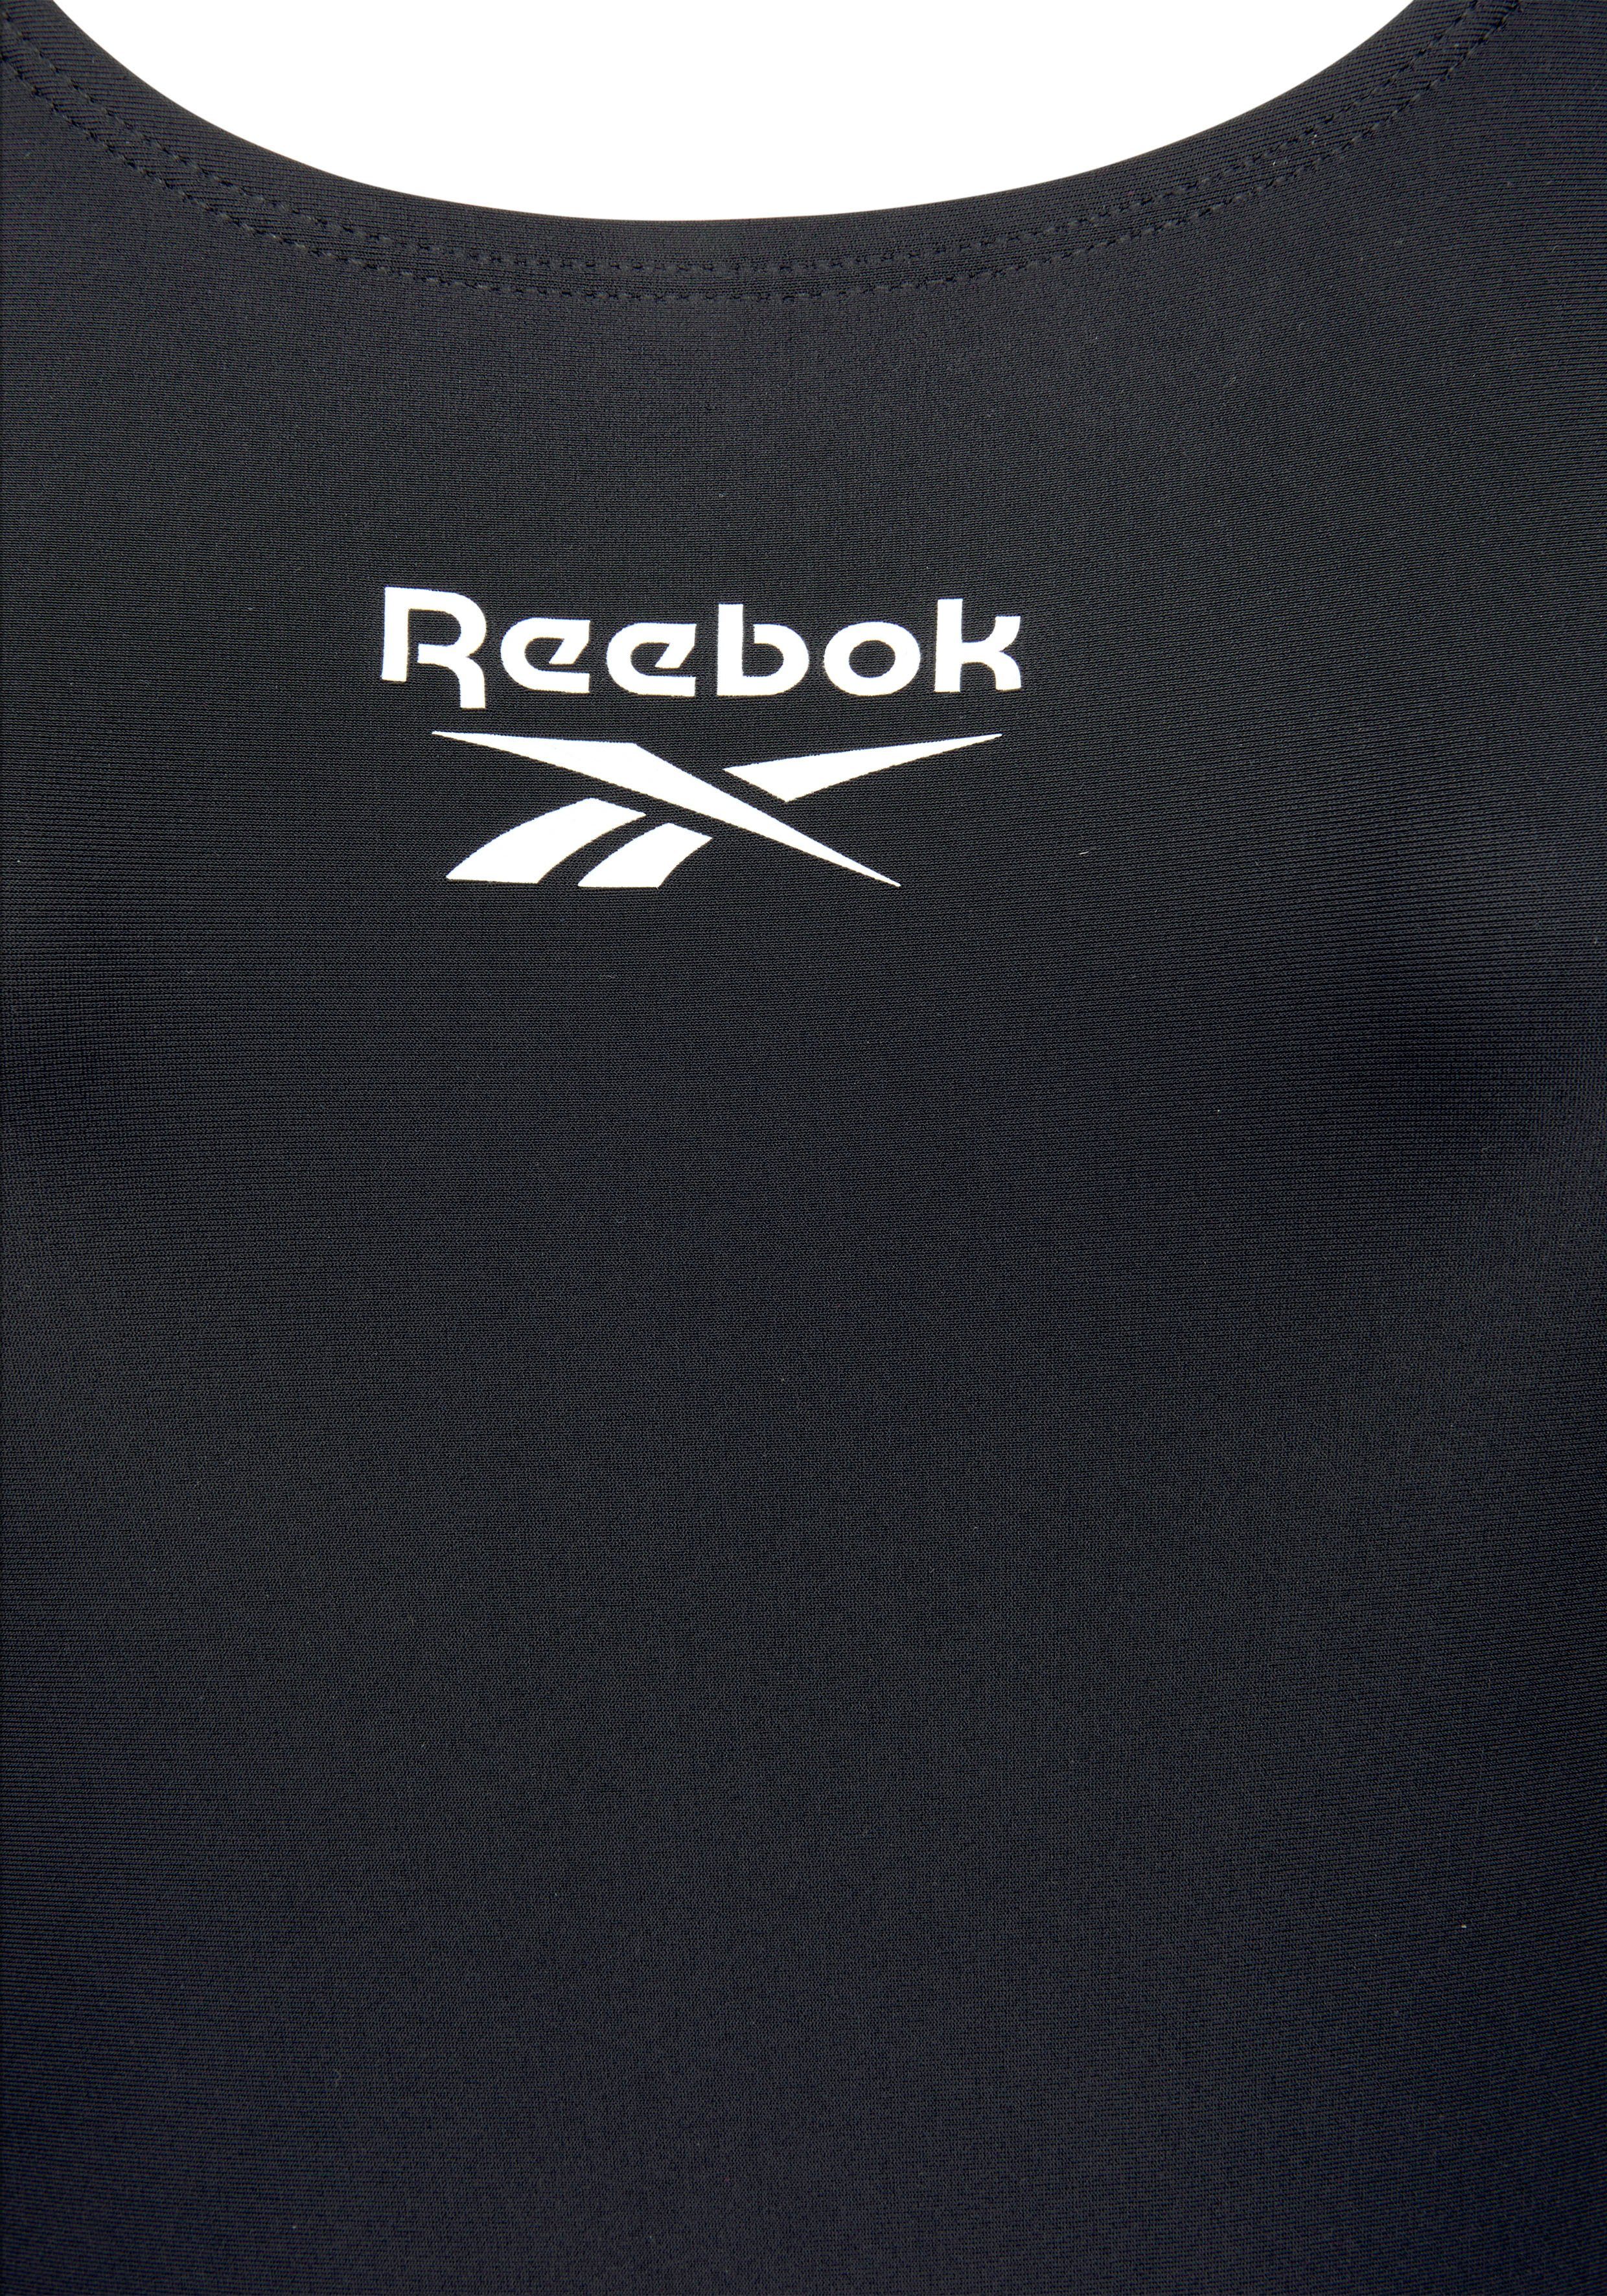 Reebok Badeanzug Adelia mit Logoschriftzug black und am Rücken vorn